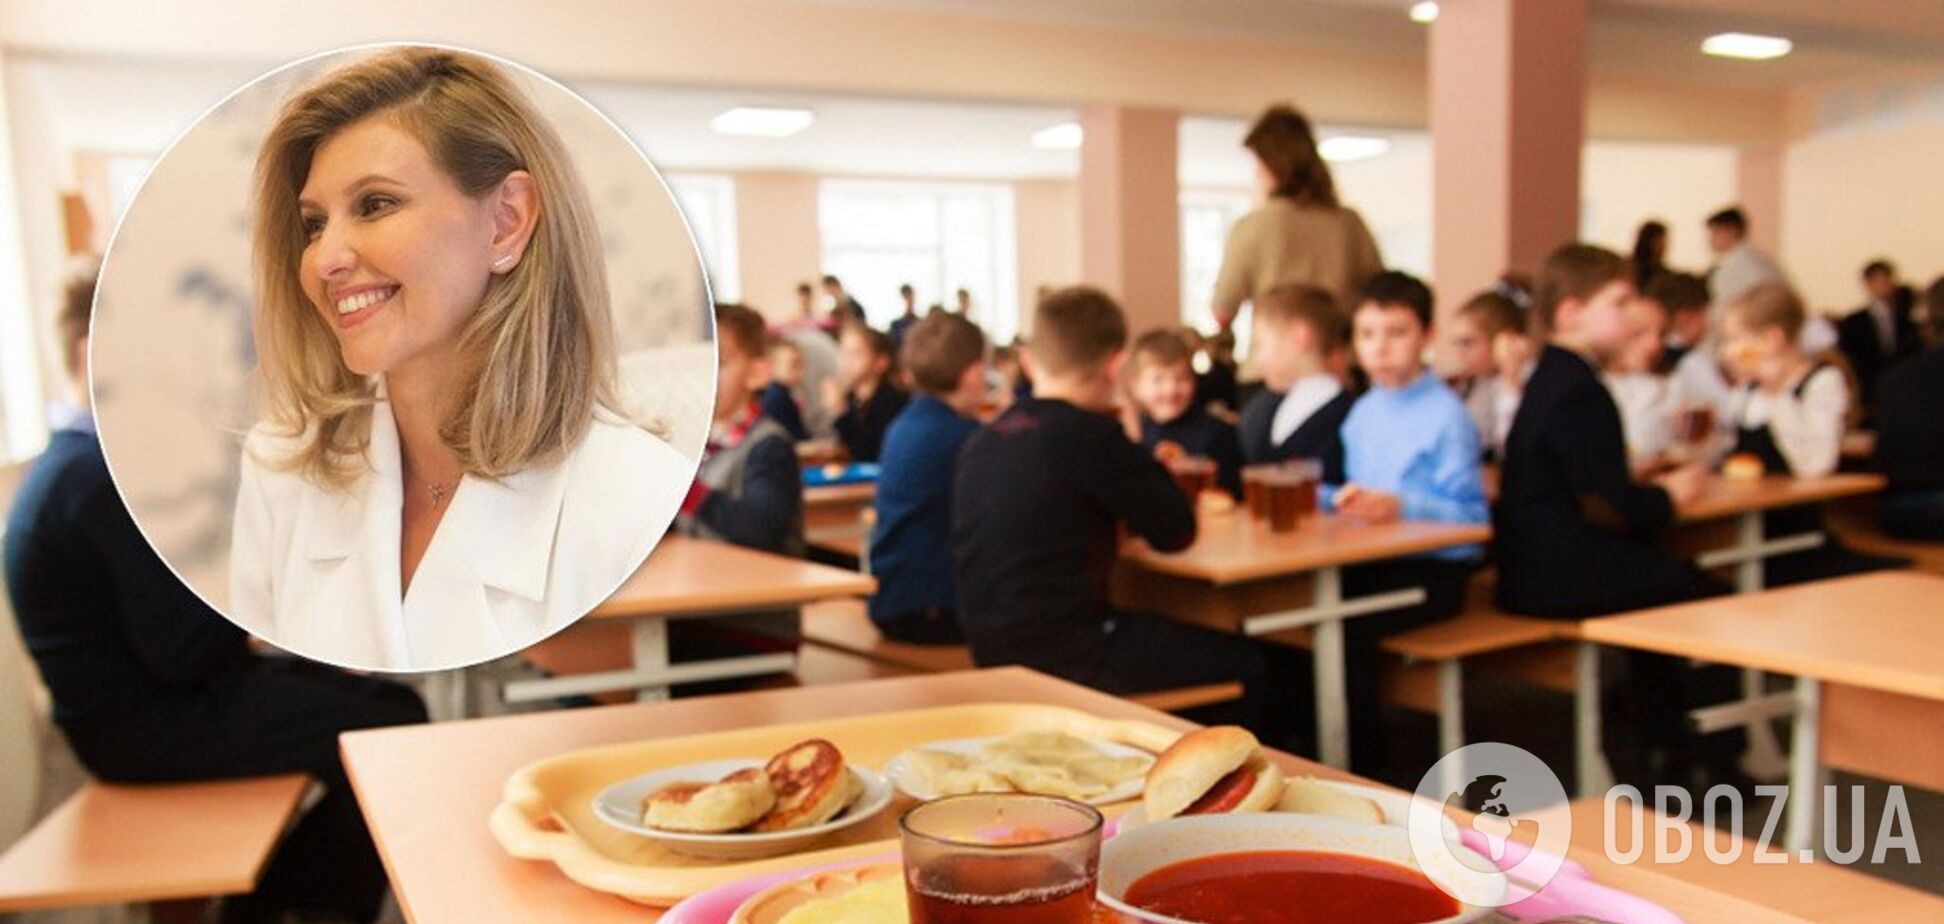 Чтобы не гнили яблоки: Елена Зеленская раскрыла планы по питанию в школах